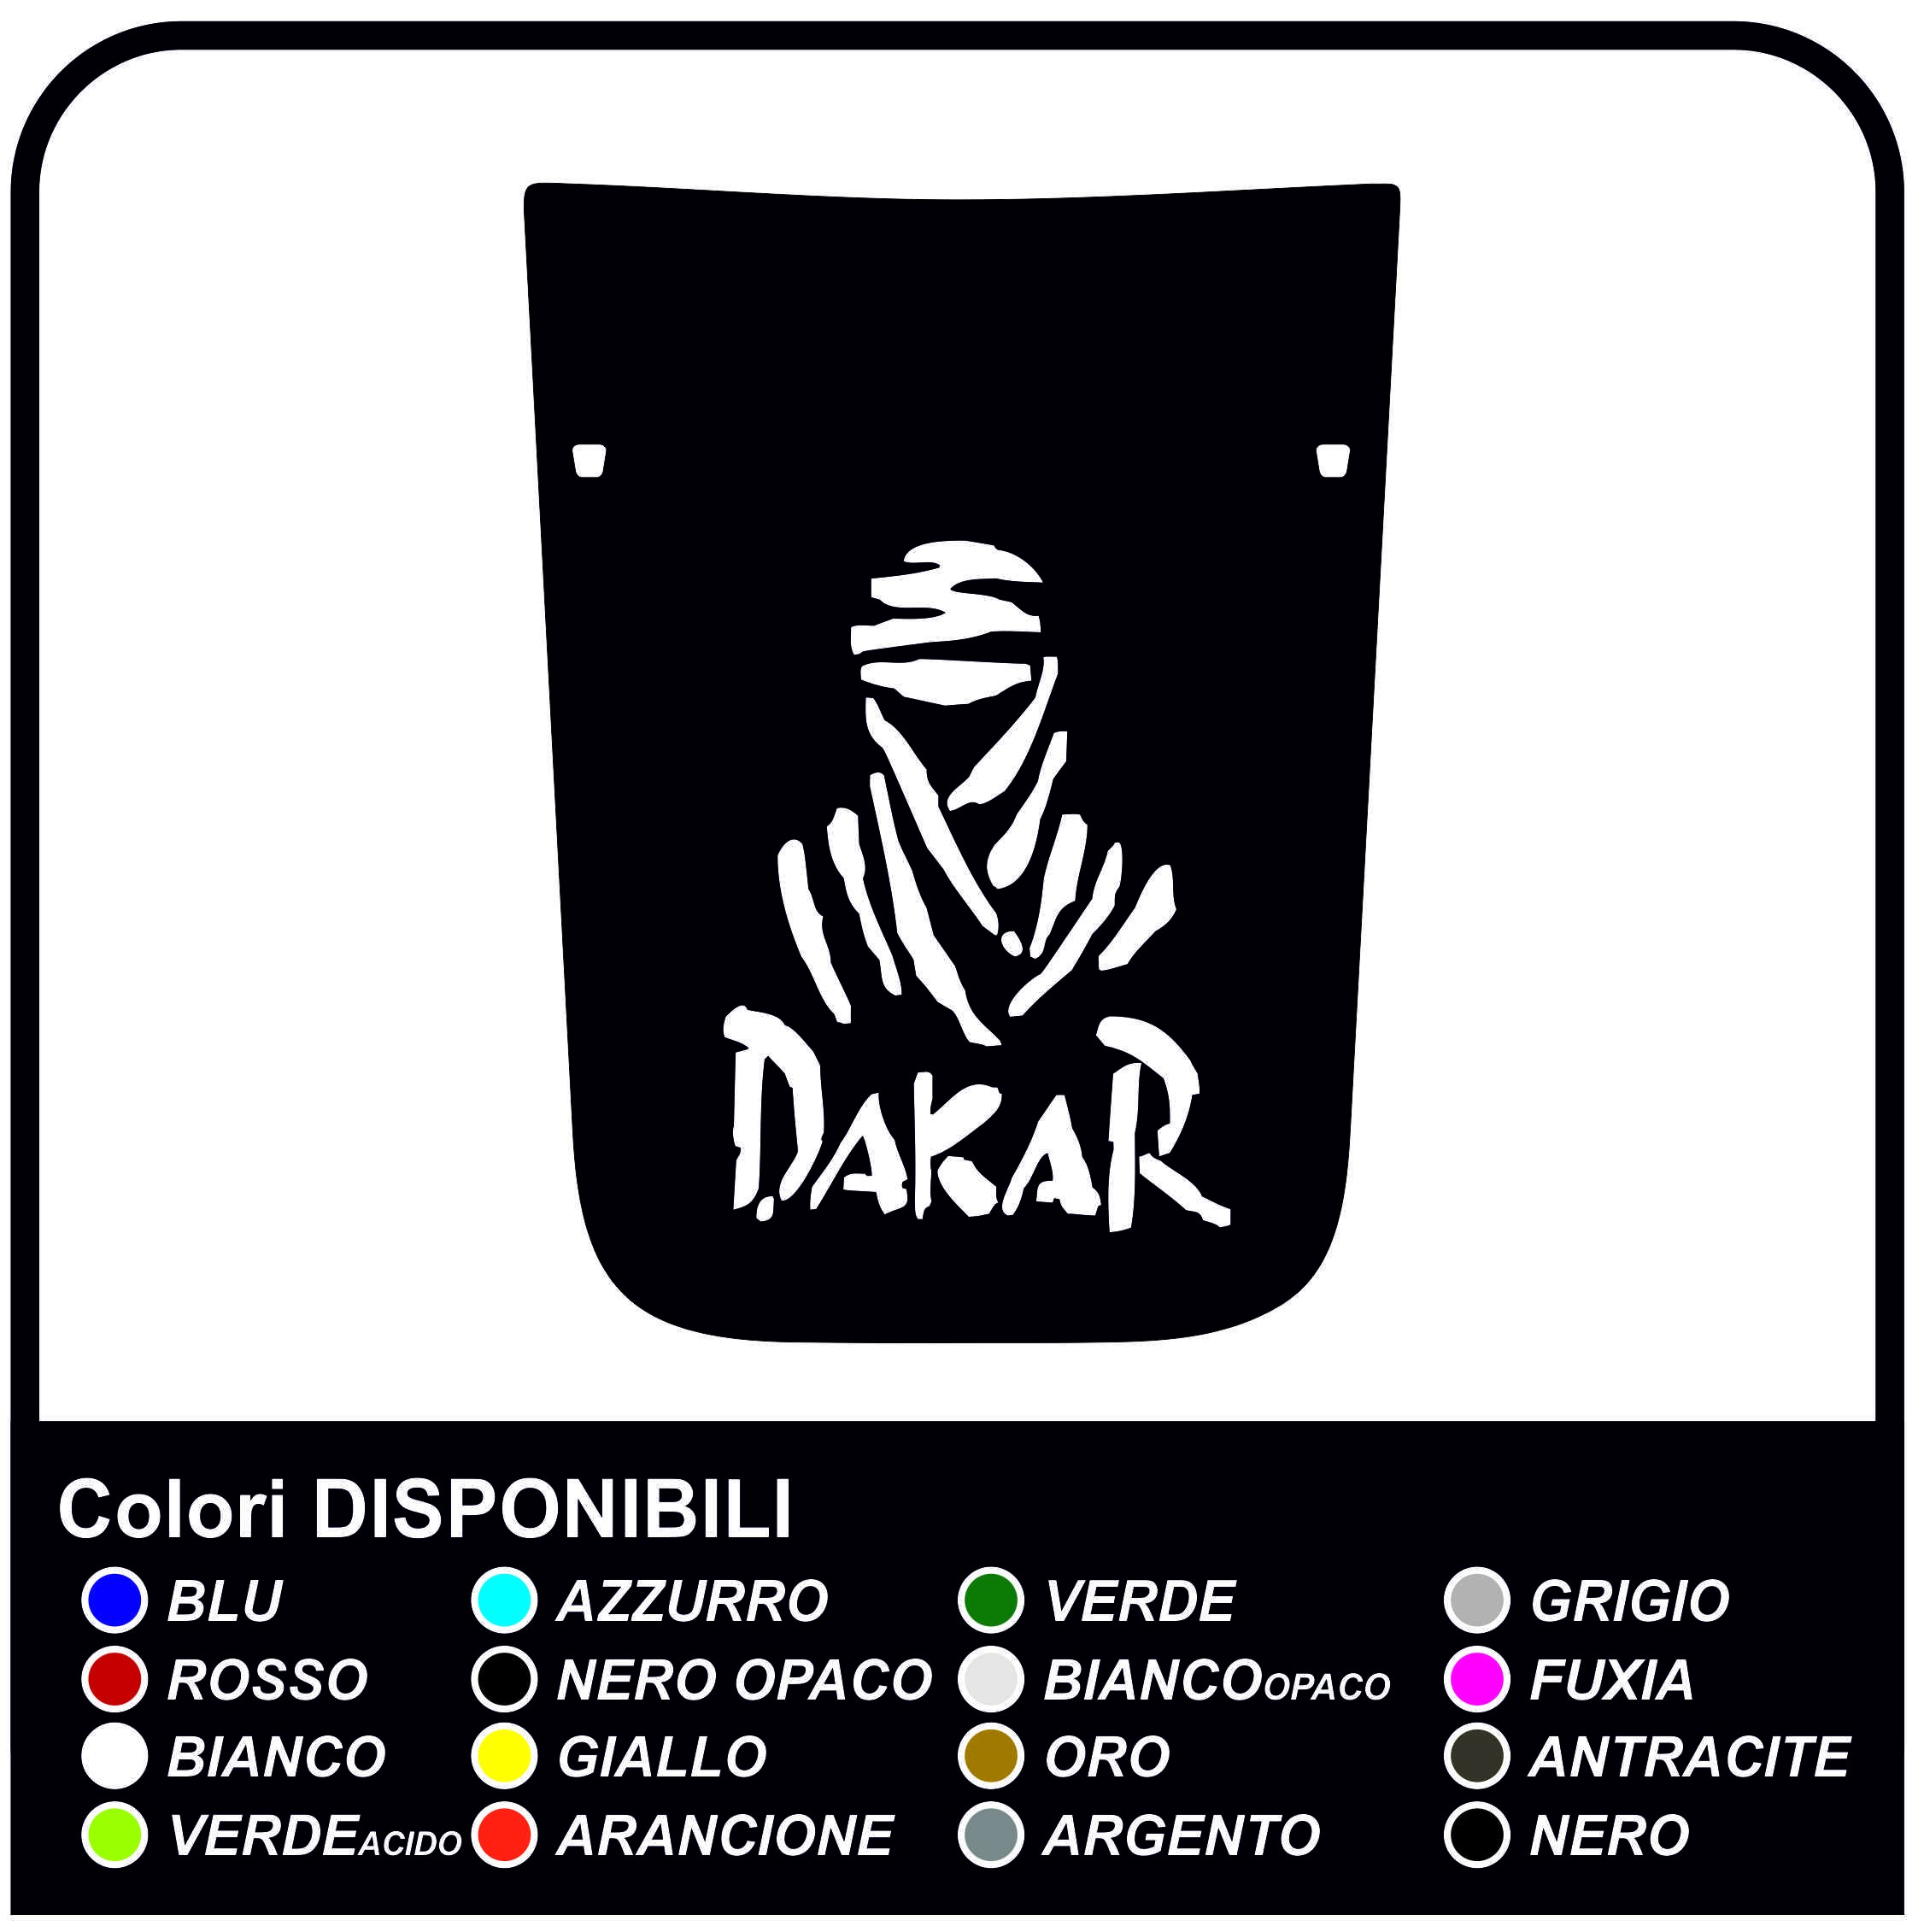 Dakar Decal Sticker